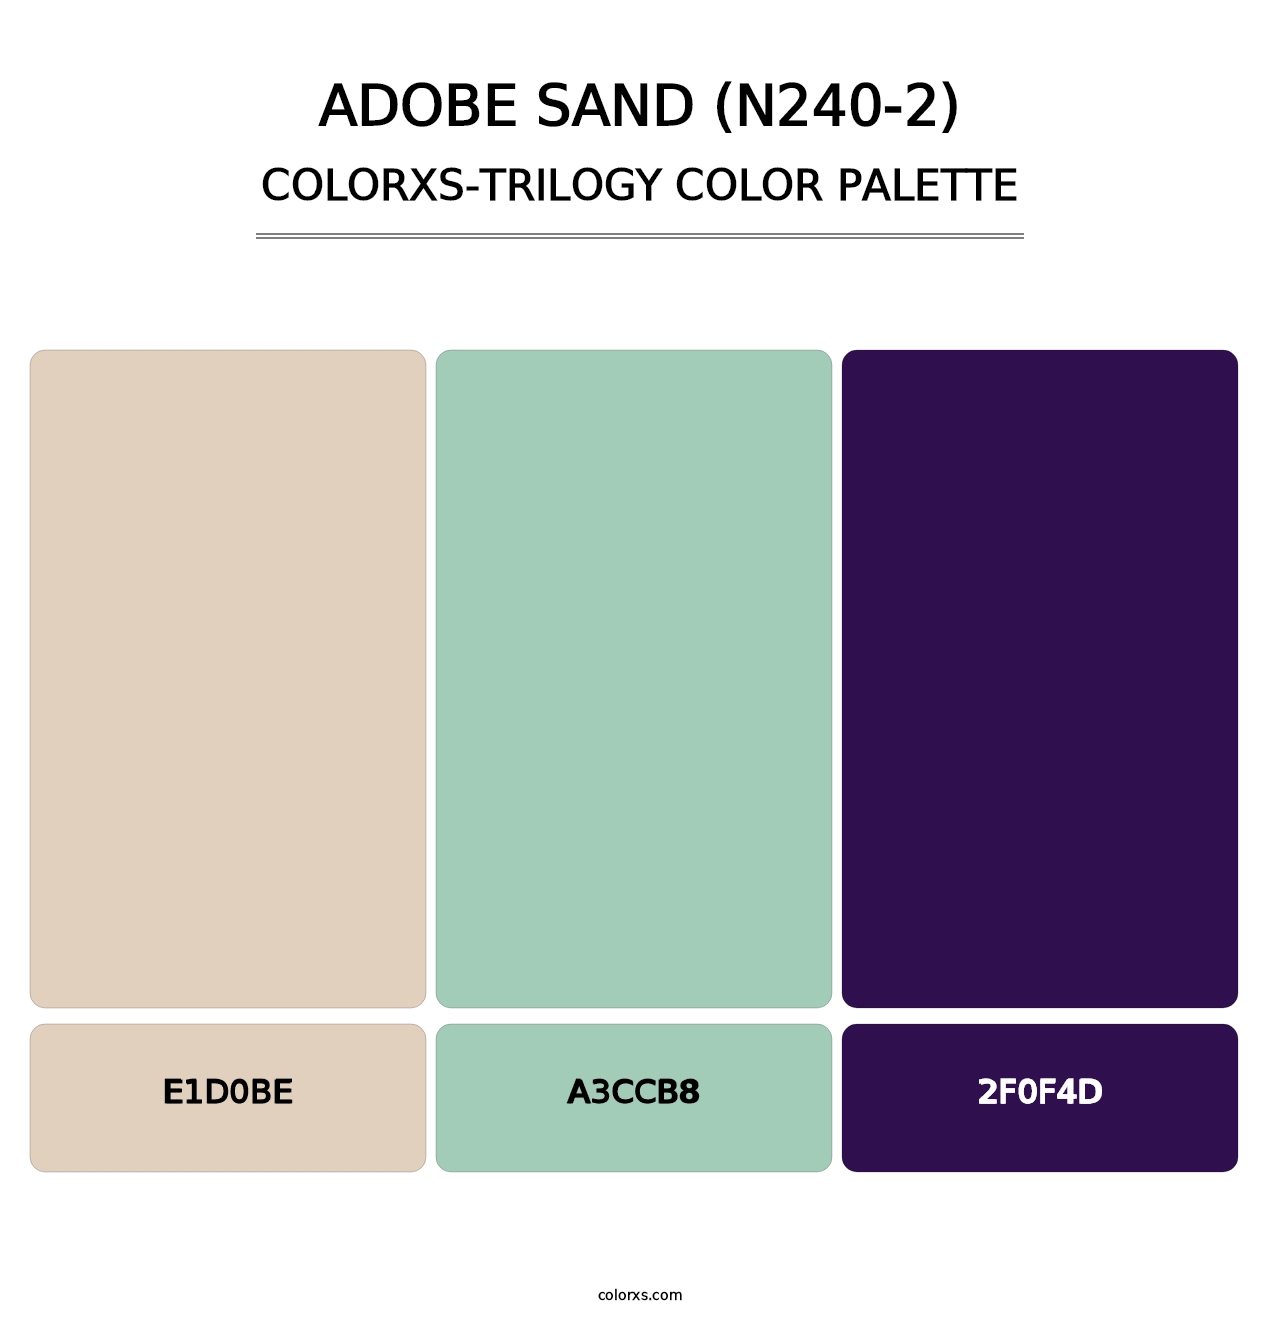 Adobe Sand (N240-2) - Colorxs Trilogy Palette